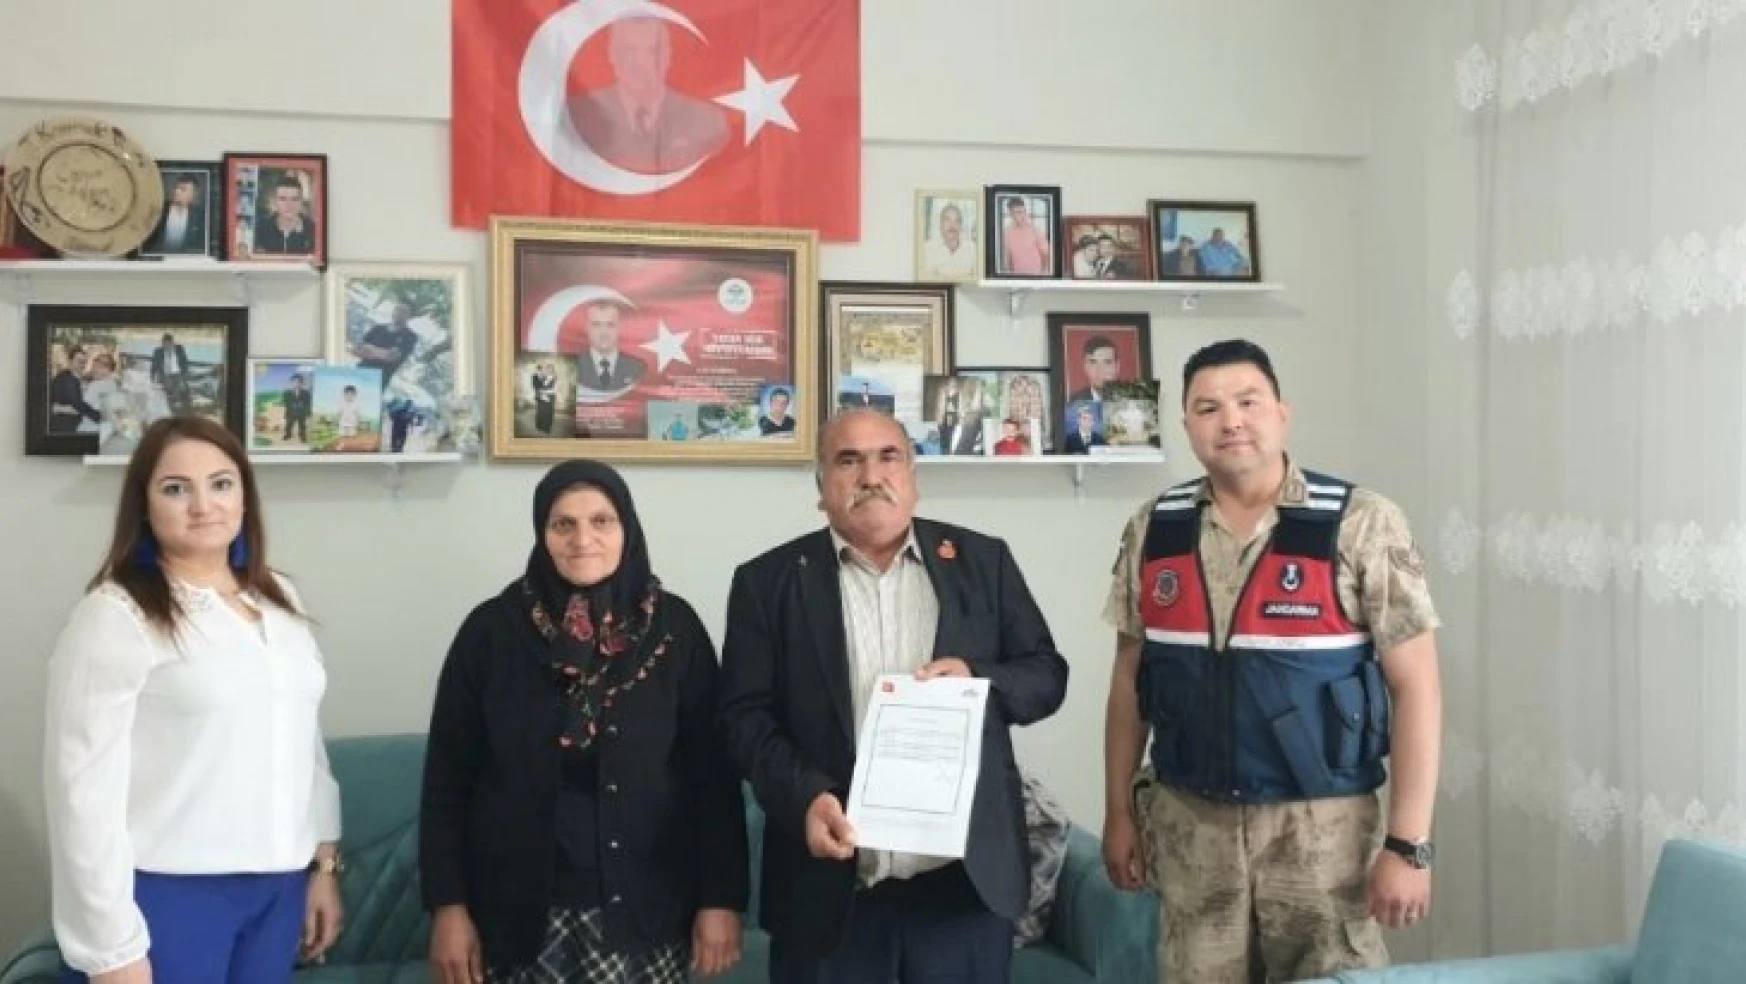 Şehit ailesinden Jandarma Karakoluna teşekkür ziyareti